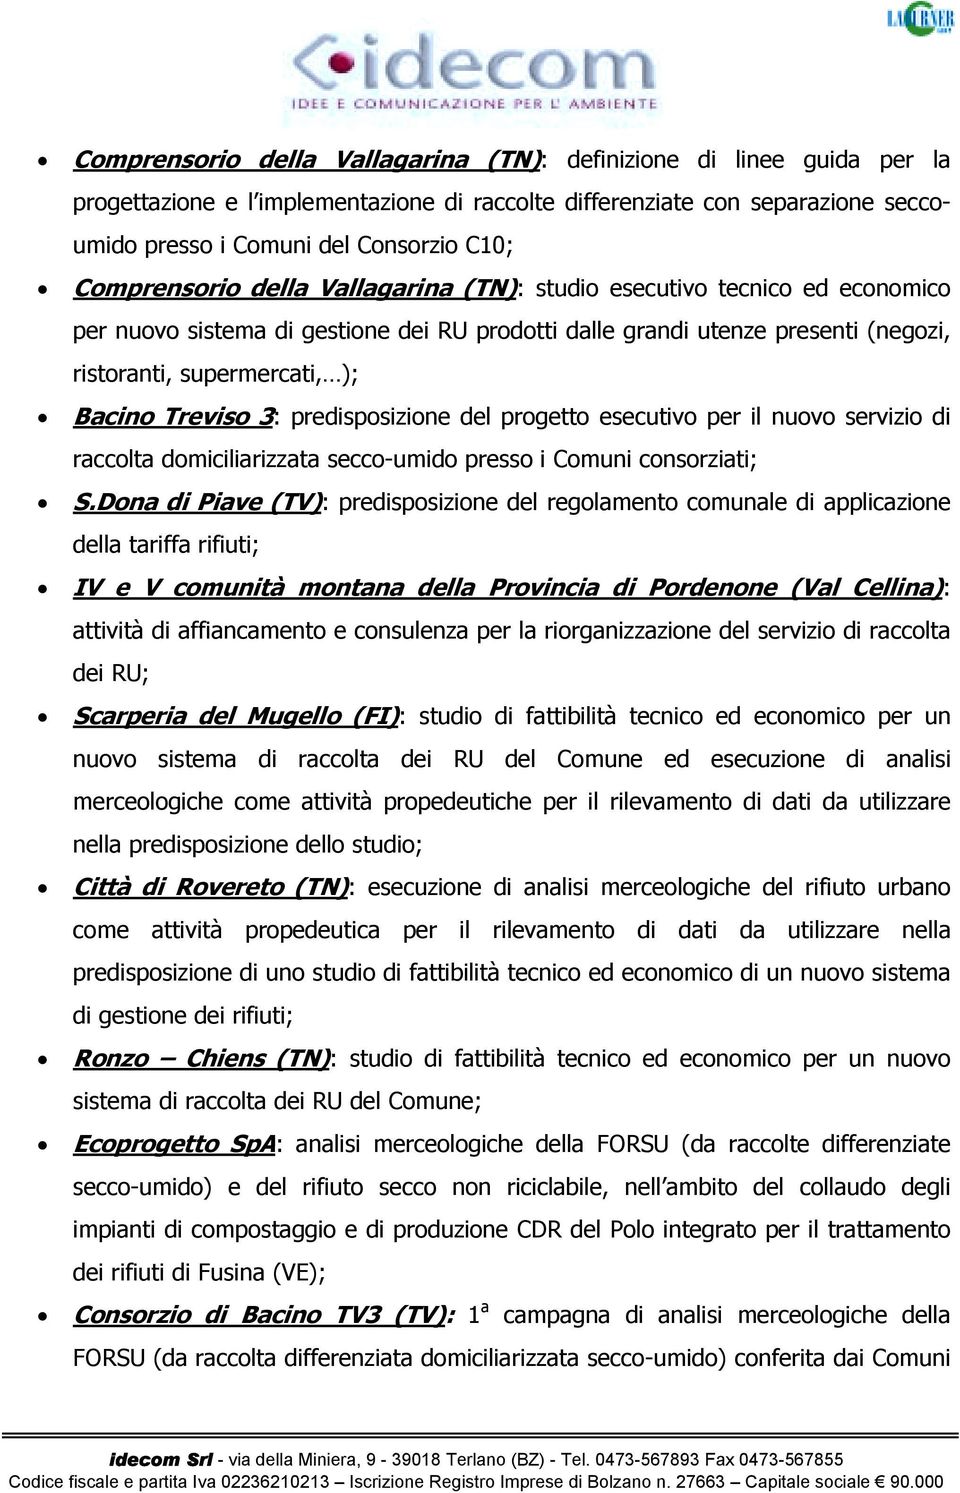 Treviso 3: predisposizione del progetto esecutivo per il nuovo servizio di raccolta domiciliarizzata secco-umido presso i Comuni consorziati; S.